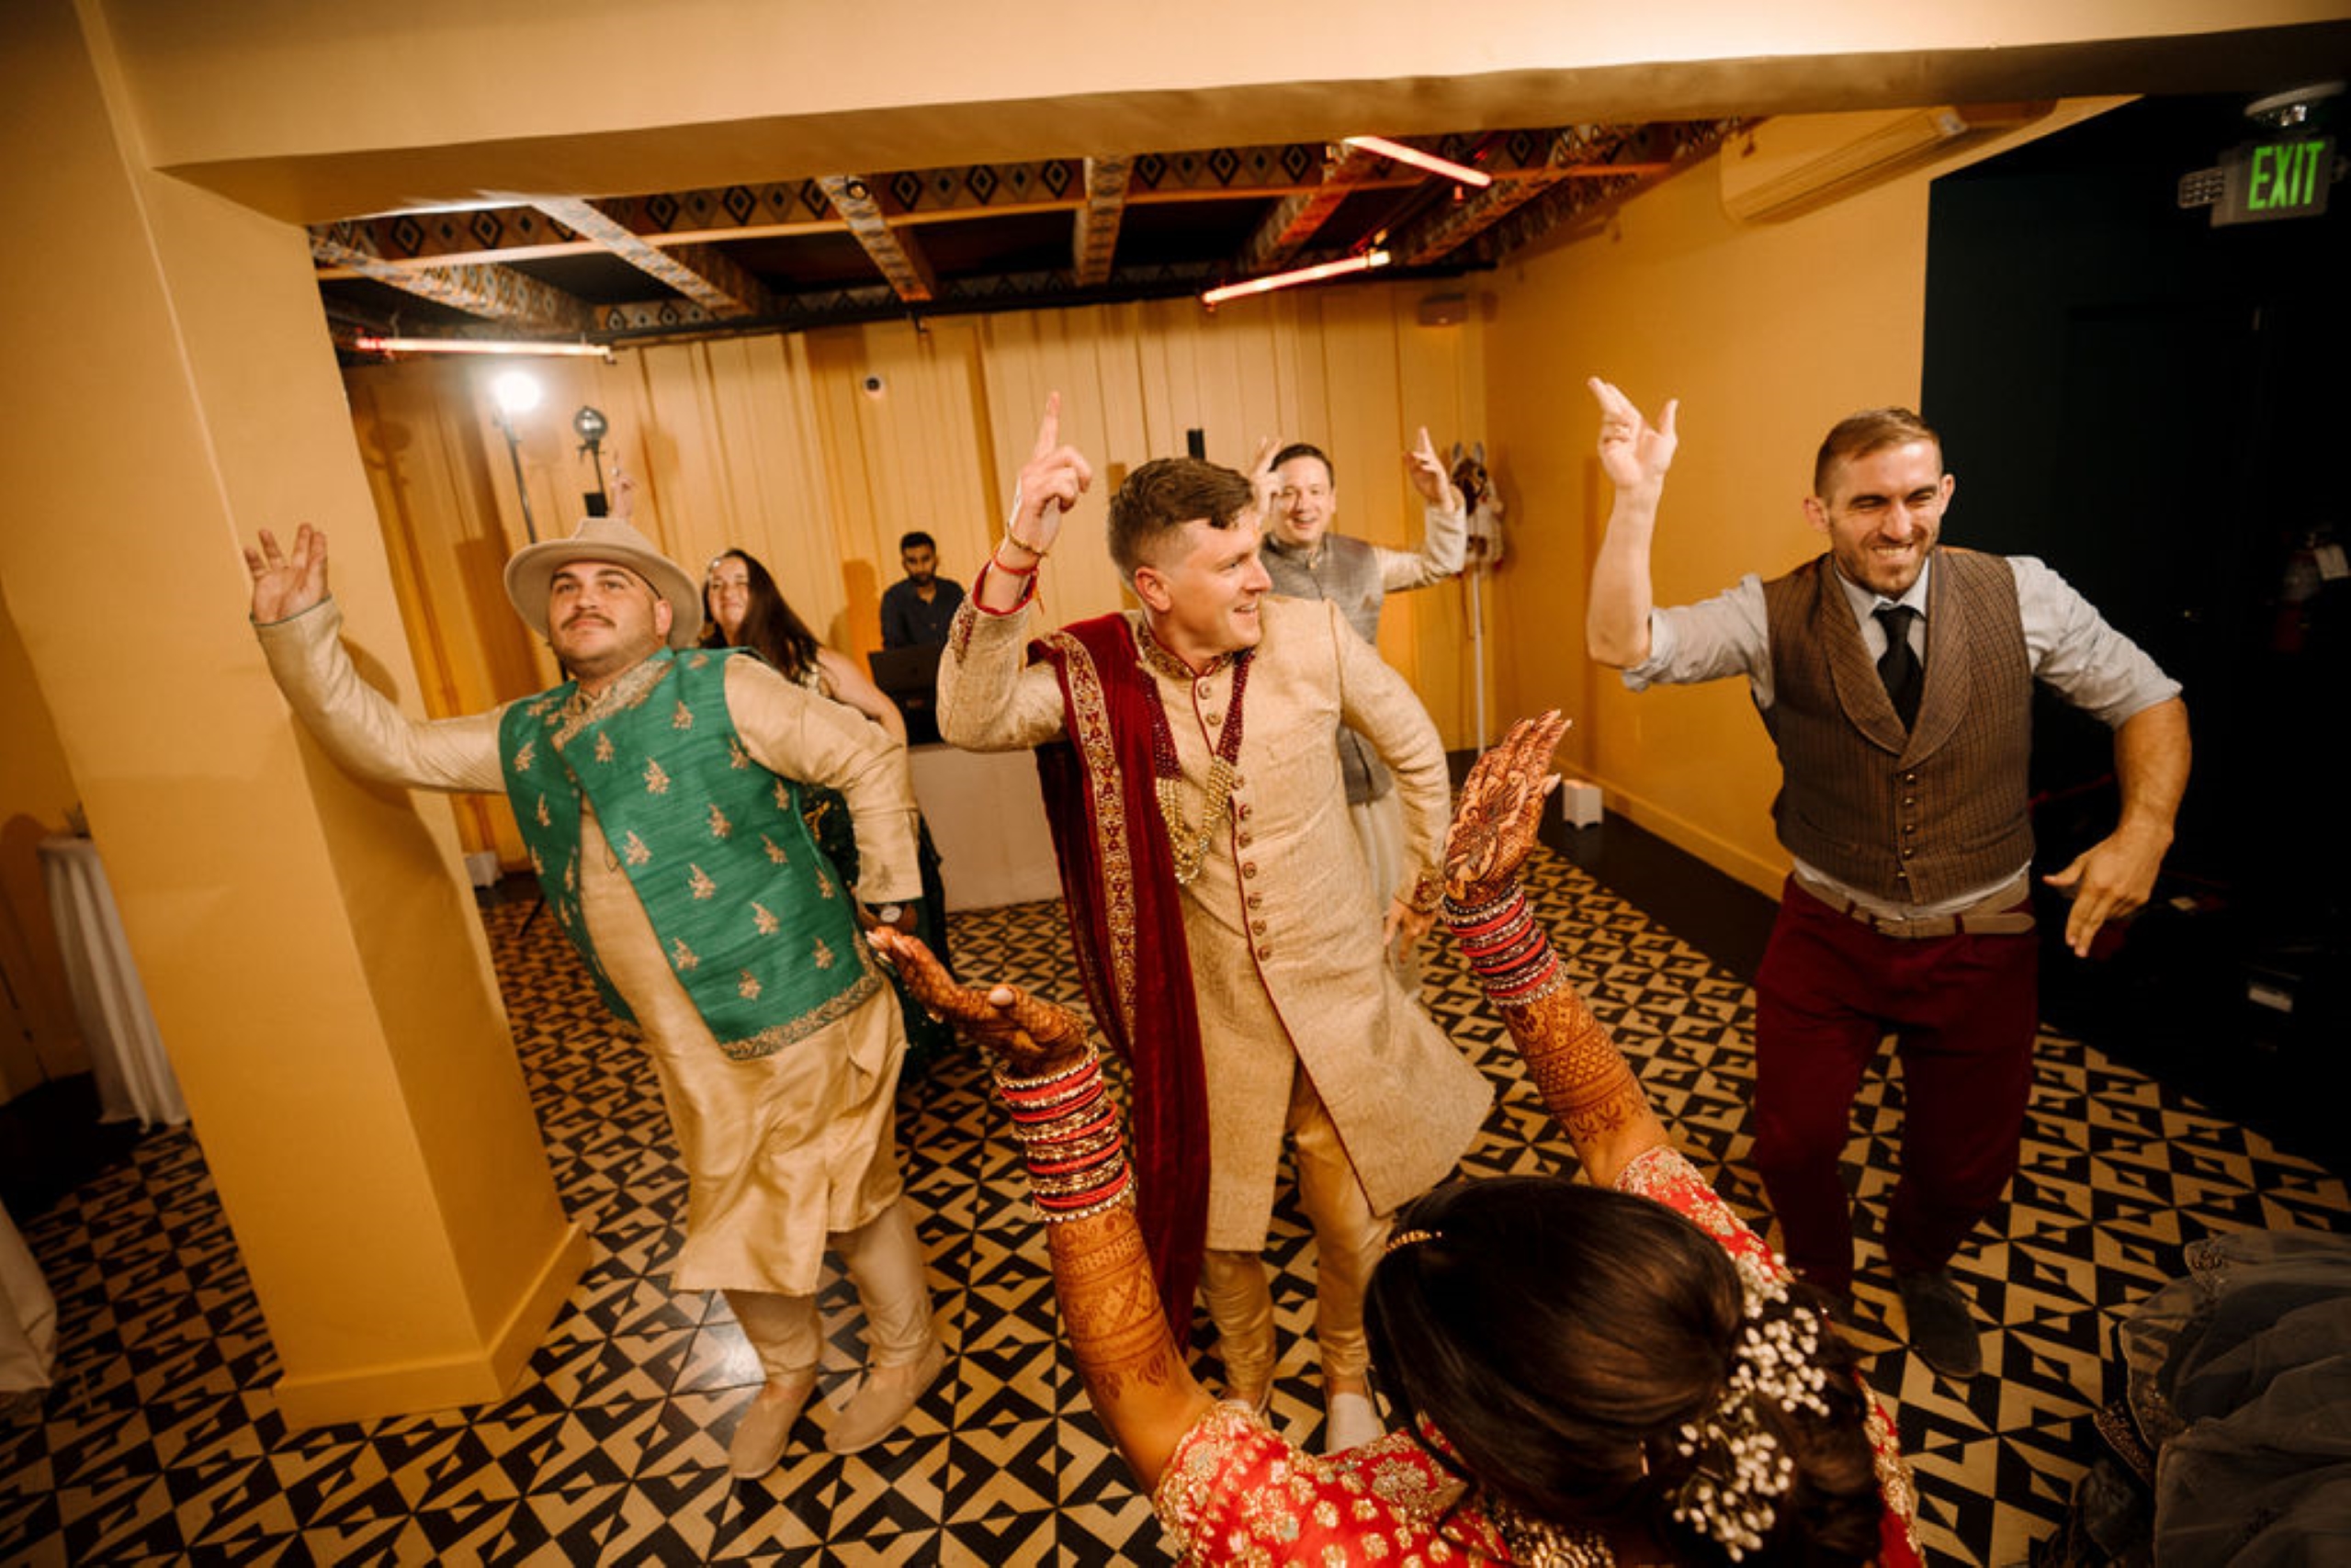 Indian wedding men dancing